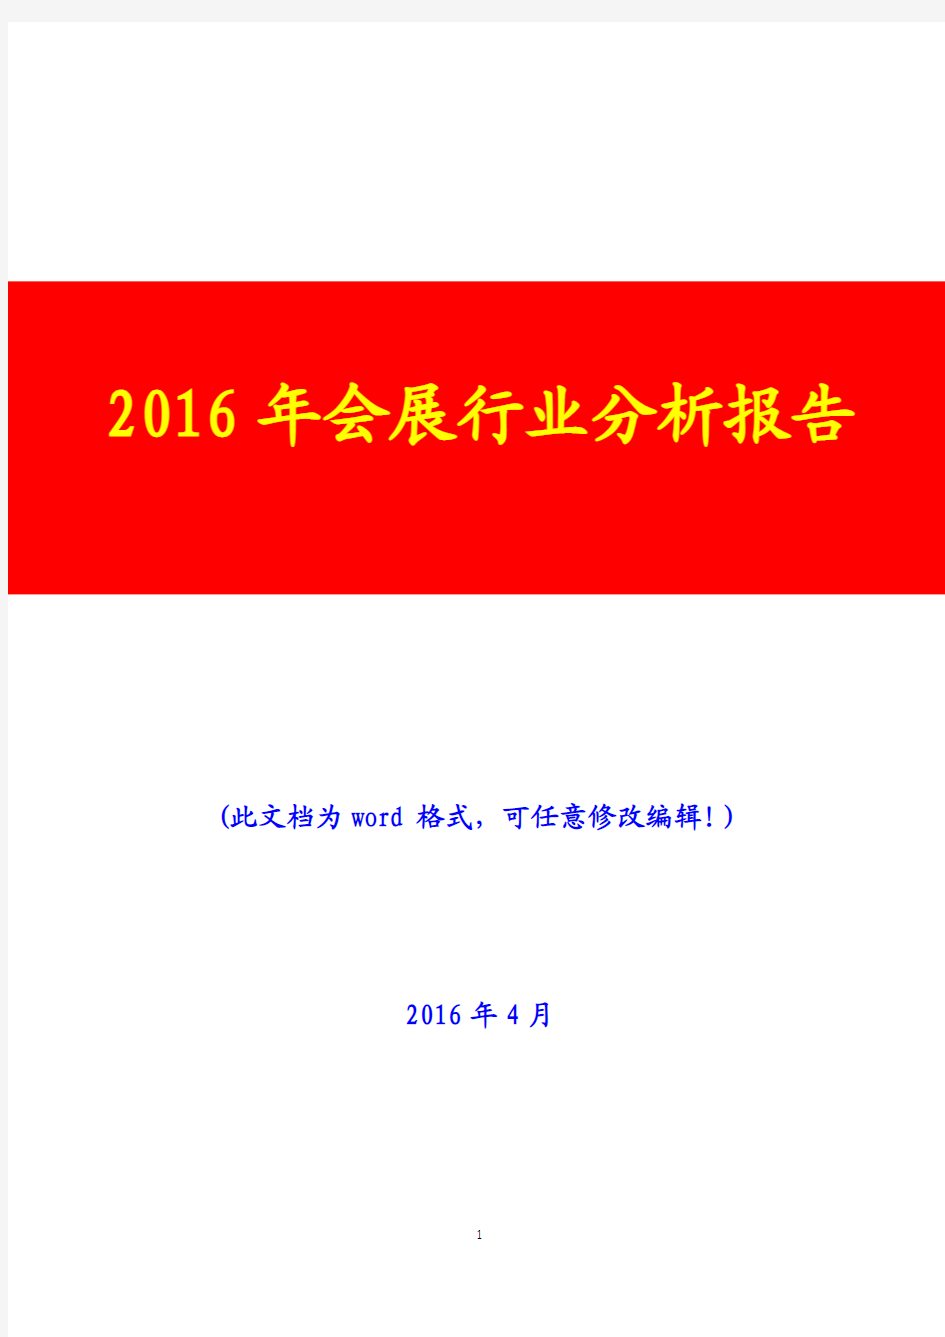 2016年会展行业分析报告(完美版)